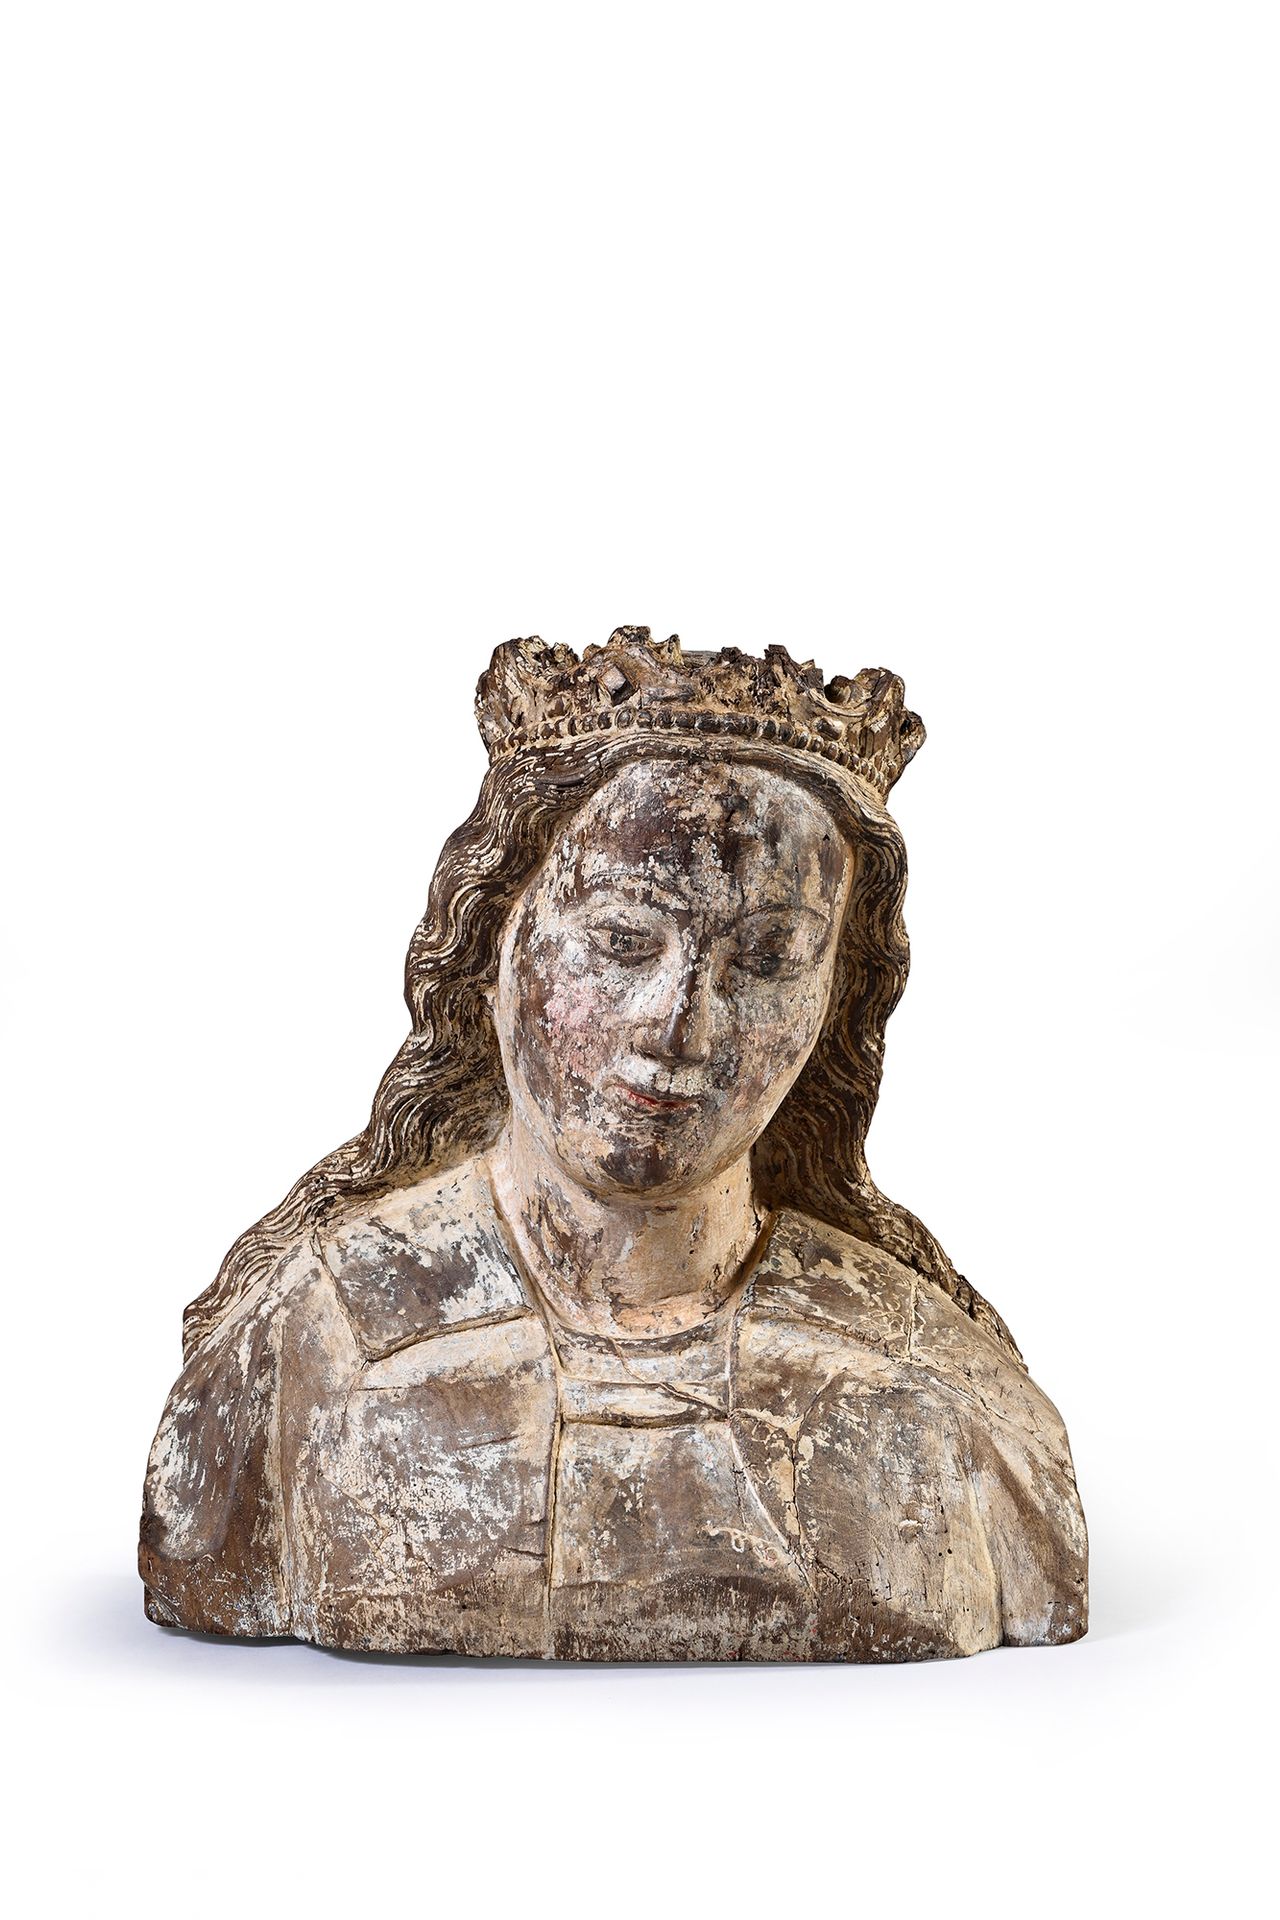 Null 胡桃木雕刻的圣母玛利亚或亚历山大的圣凯瑟琳的半身像，背面镂空，有多色的遗迹；T N E下面有铭文。
14世纪
H.38厘米
(小虫孔)